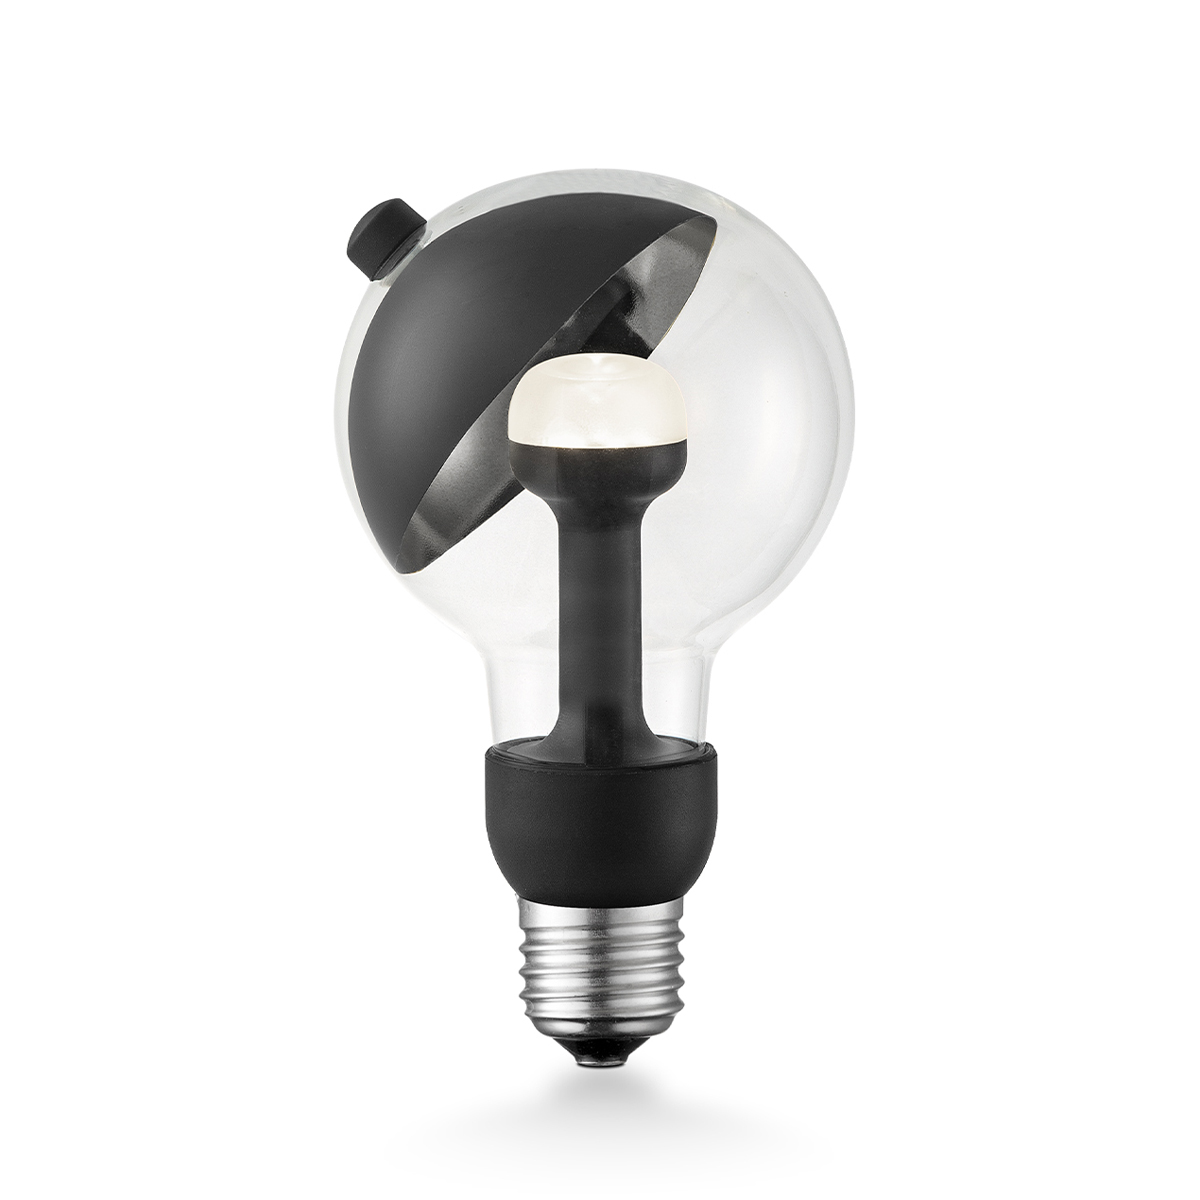 Tangla lighting - 0372-05-N - LED Light Bulb Move me - G80 3W Sphere black - E27 / E26